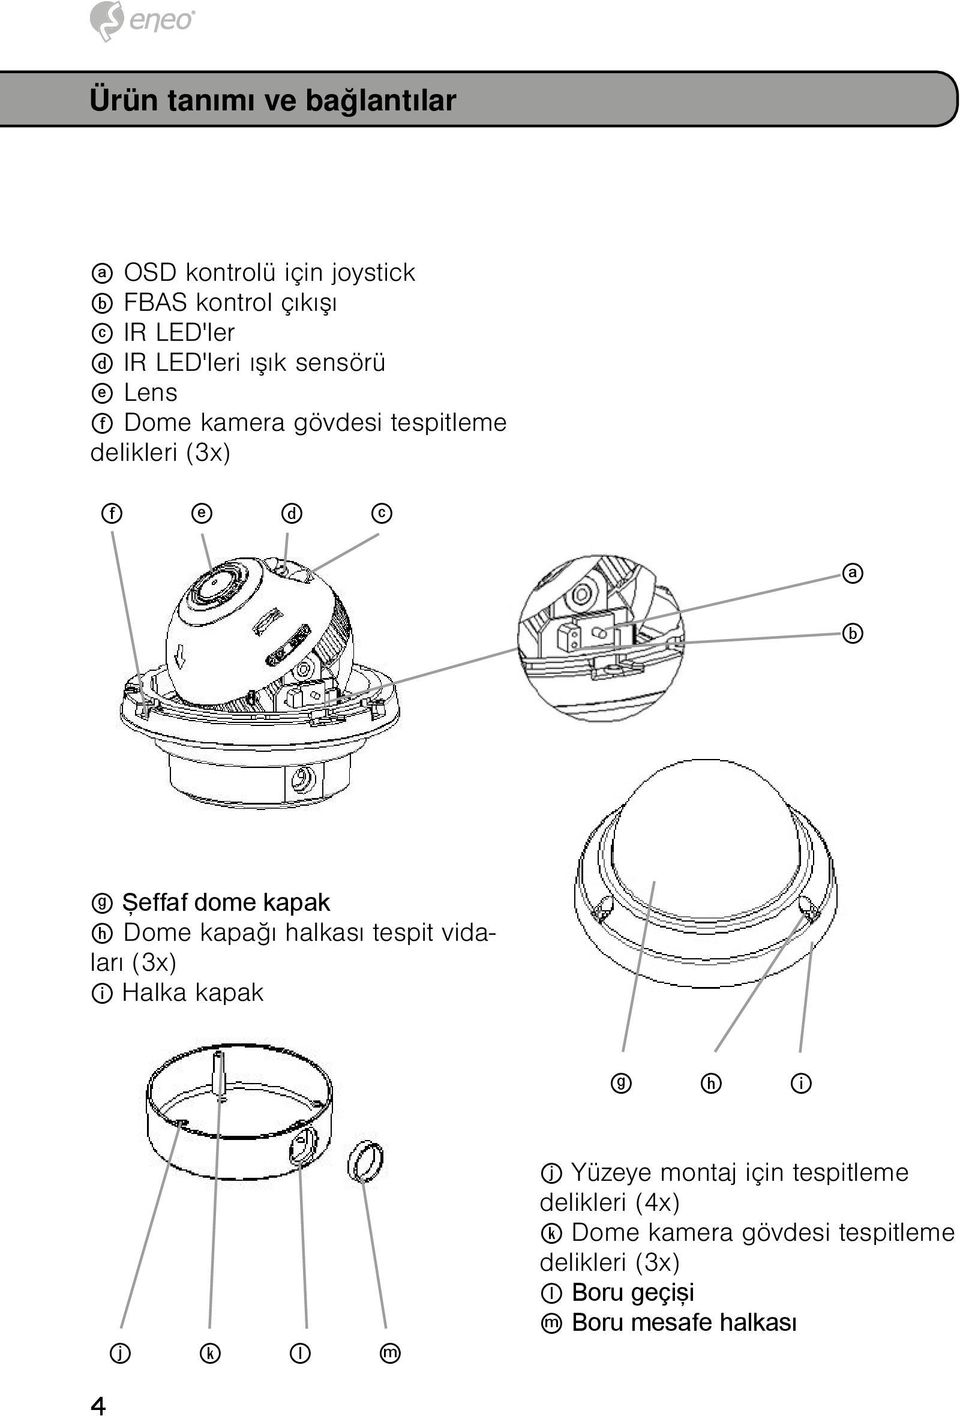 dome kapak h Dome kapağı halkası tespit vidaları (3x) i Halka kapak g h i j k l m j Yüzeye montaj